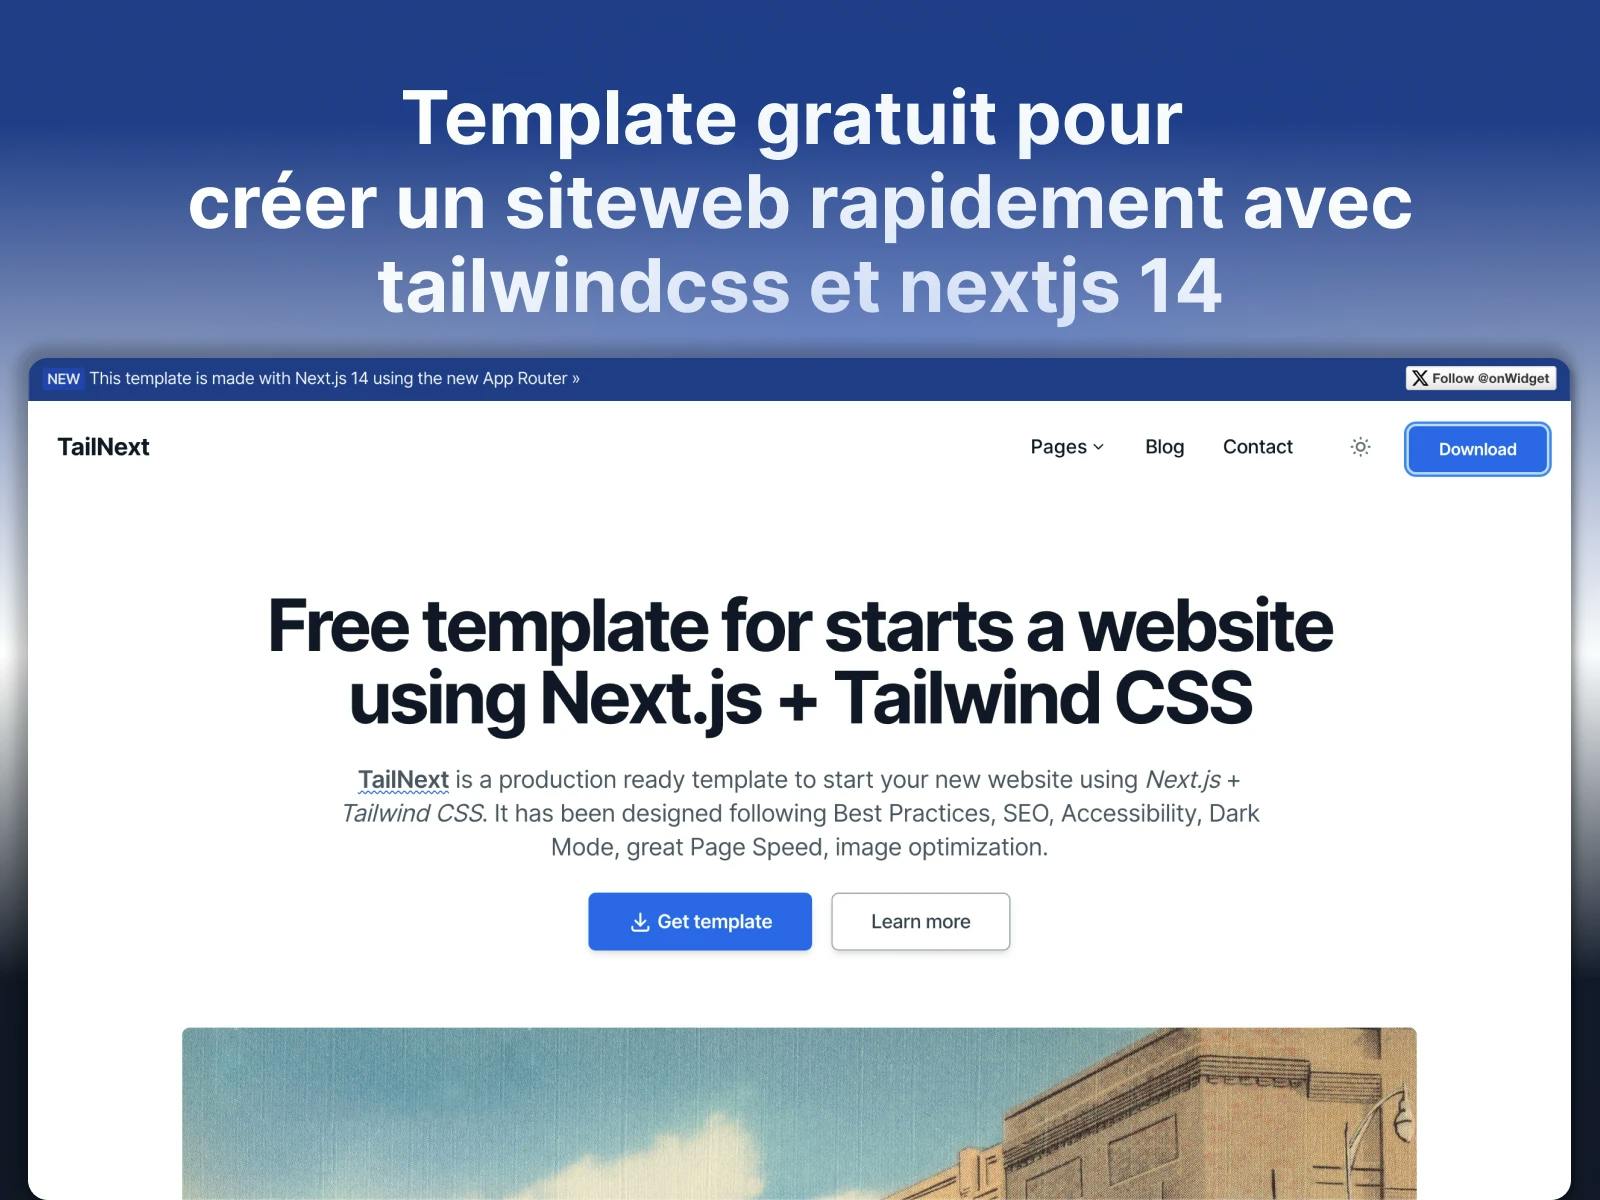 tailnext template gratuit pour creer un site web nextjs tailwindcss